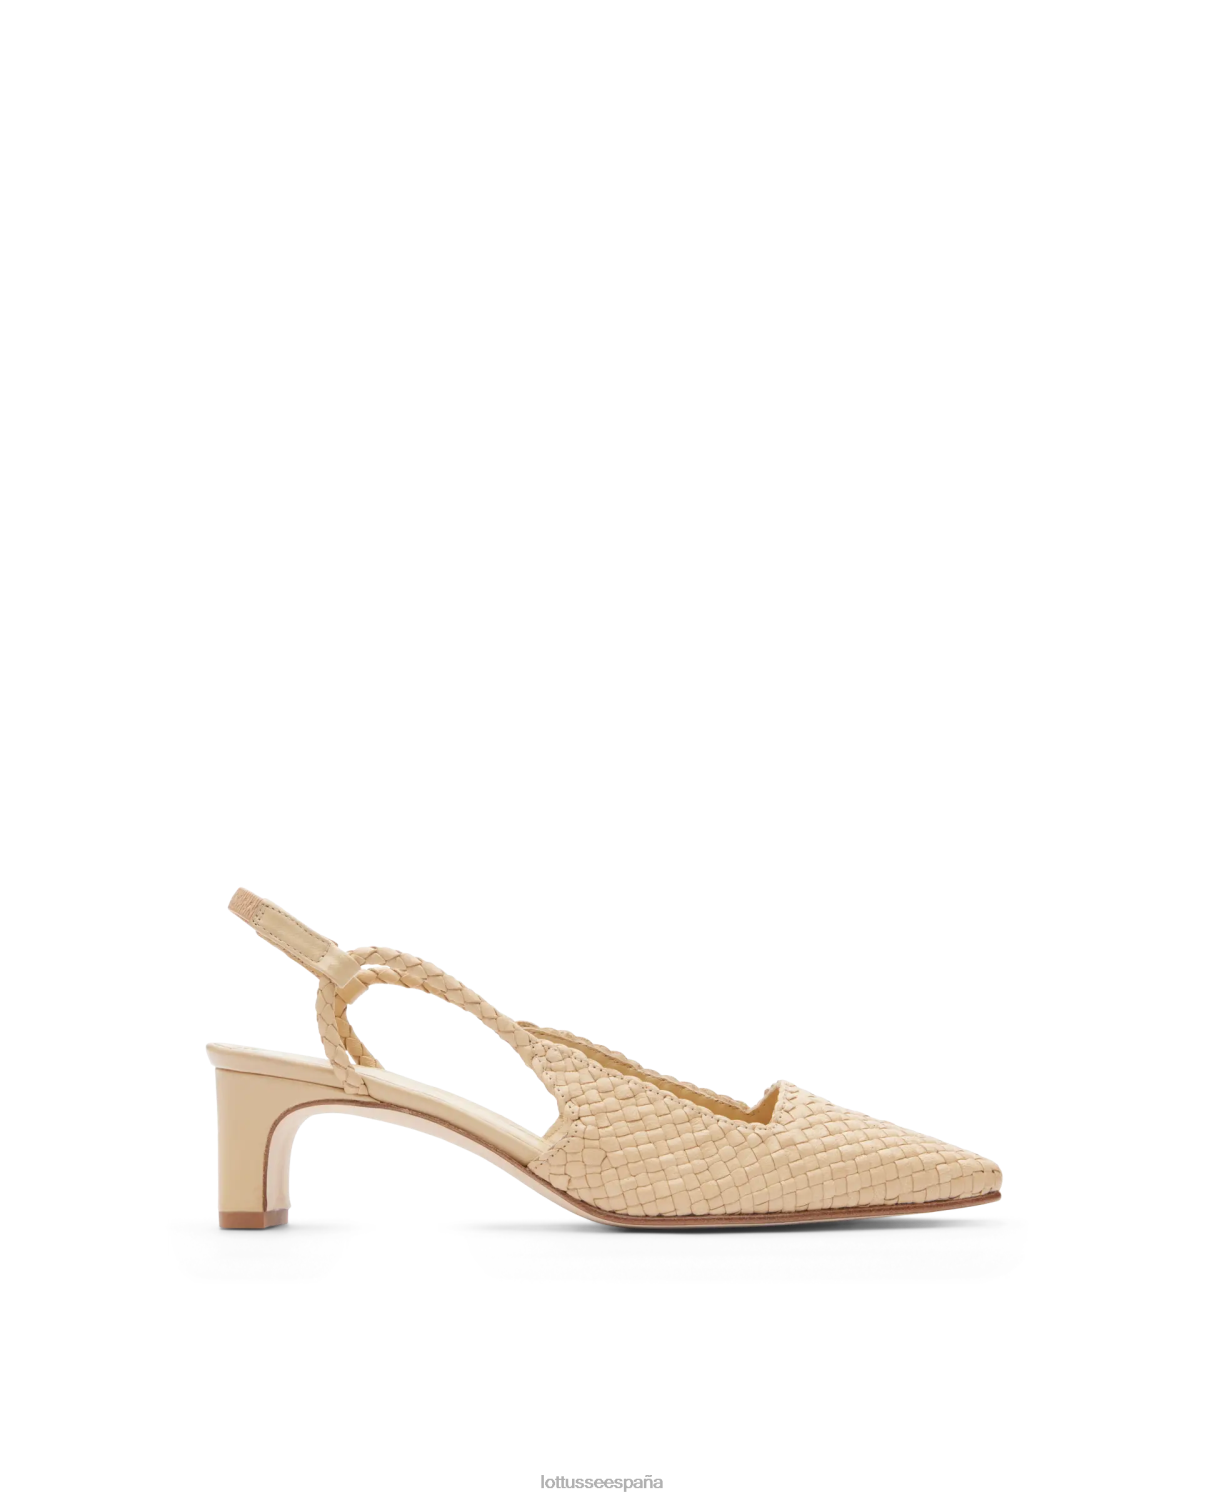 Lottusse zapatos de tacón de piel de cordero de verano beige mujer calzado V40NX311